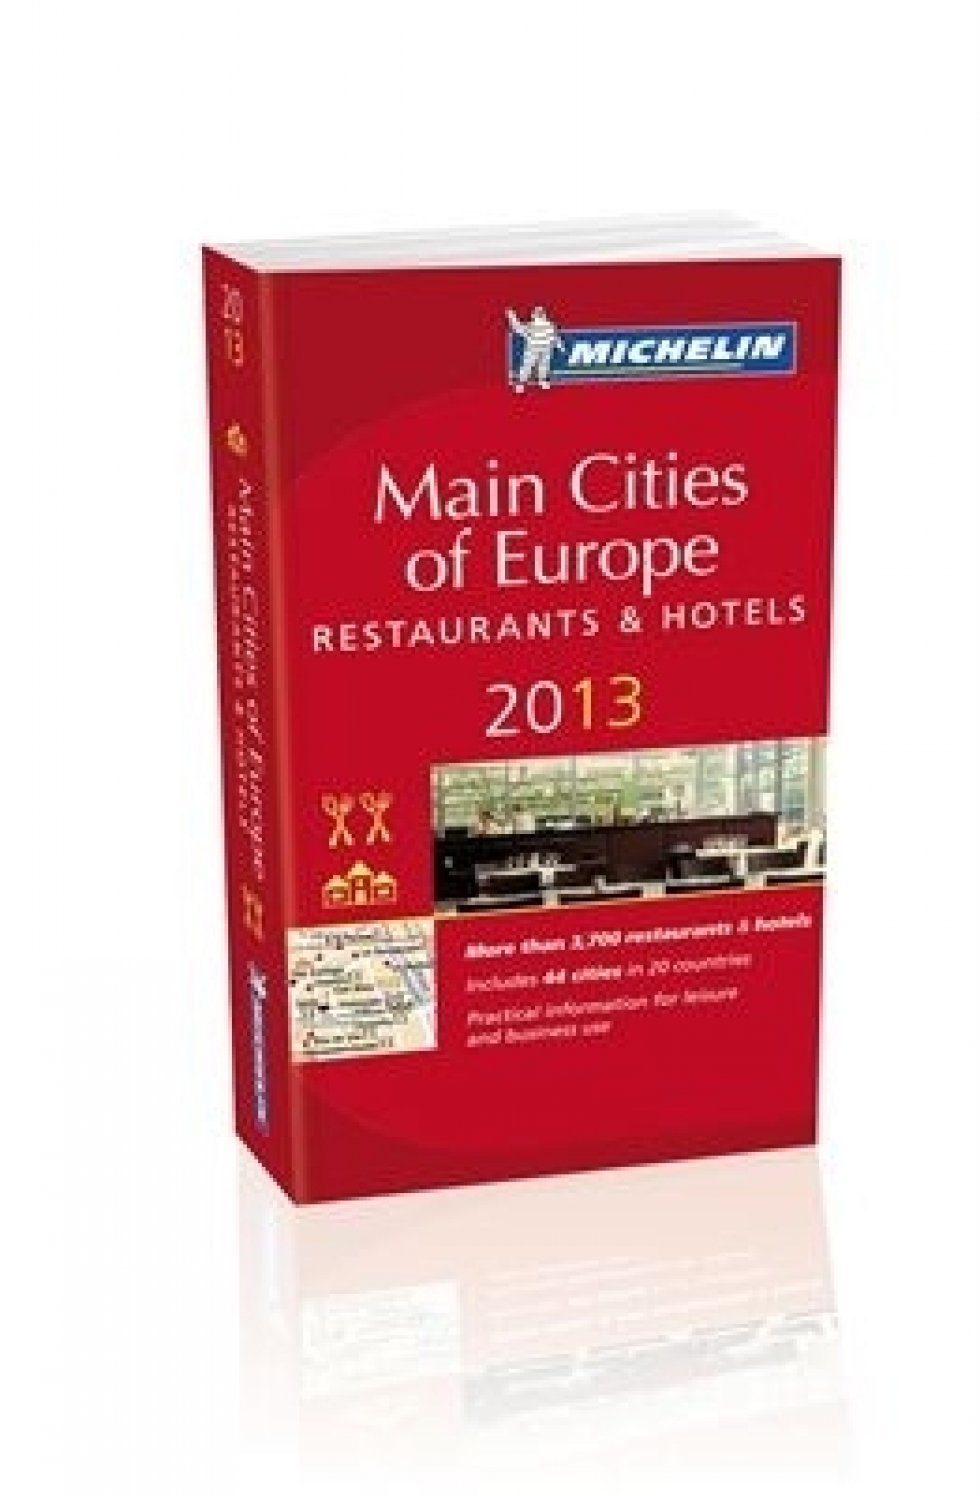 Danmark får endnu en to-stjernet restaurant i Michelin-guiden for 2013